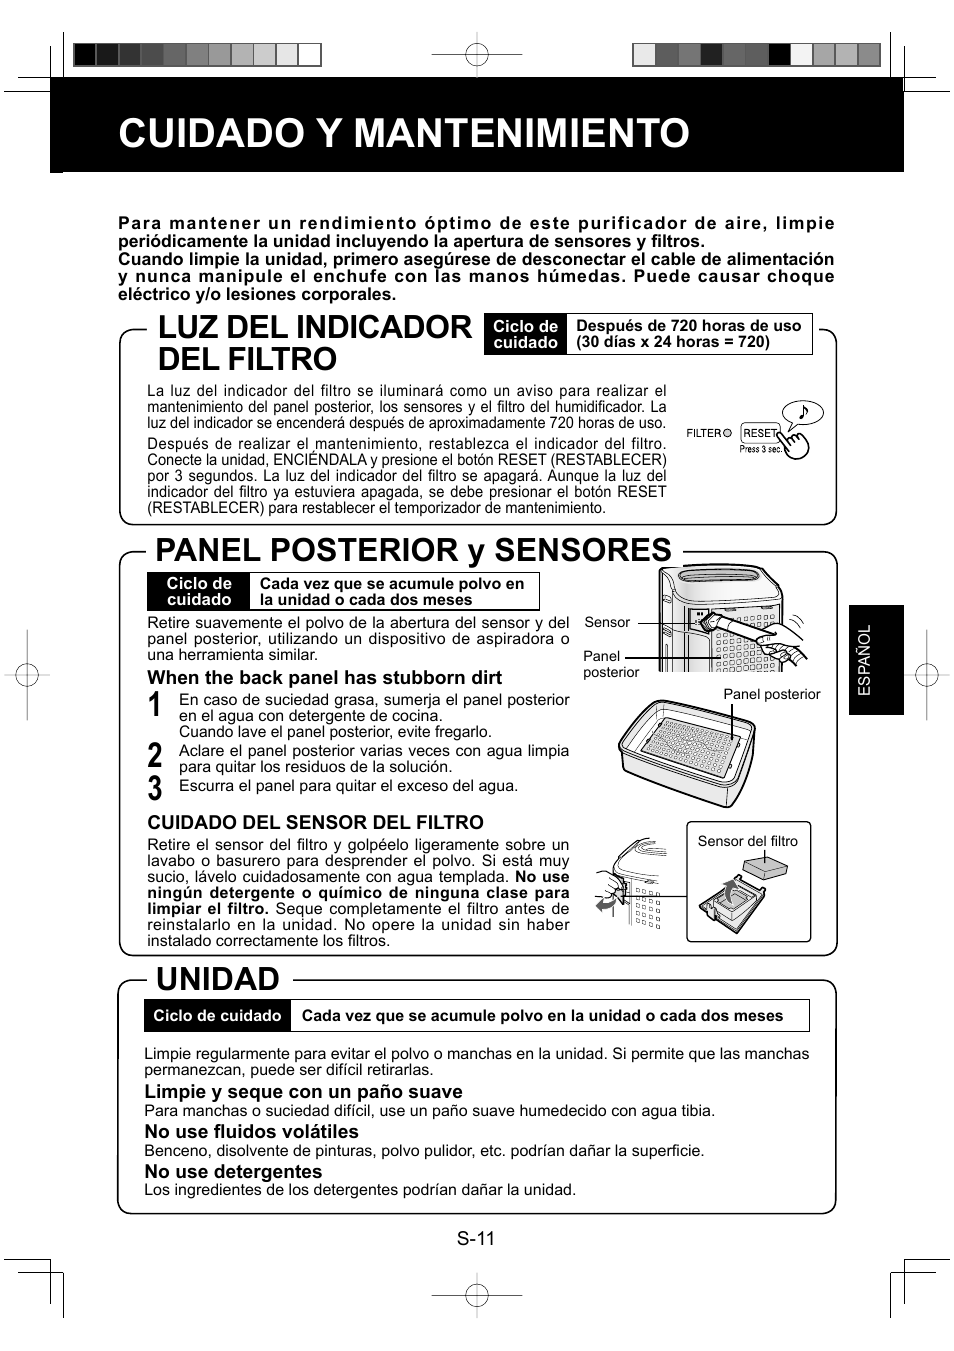 Cuidado y mantenimiento, Unidad luz del indicador del filtro, Panel posterior y sensores | Sharp ENGLISHFRANAISESPAOL KC-860U User Manual | Page 59 / 68